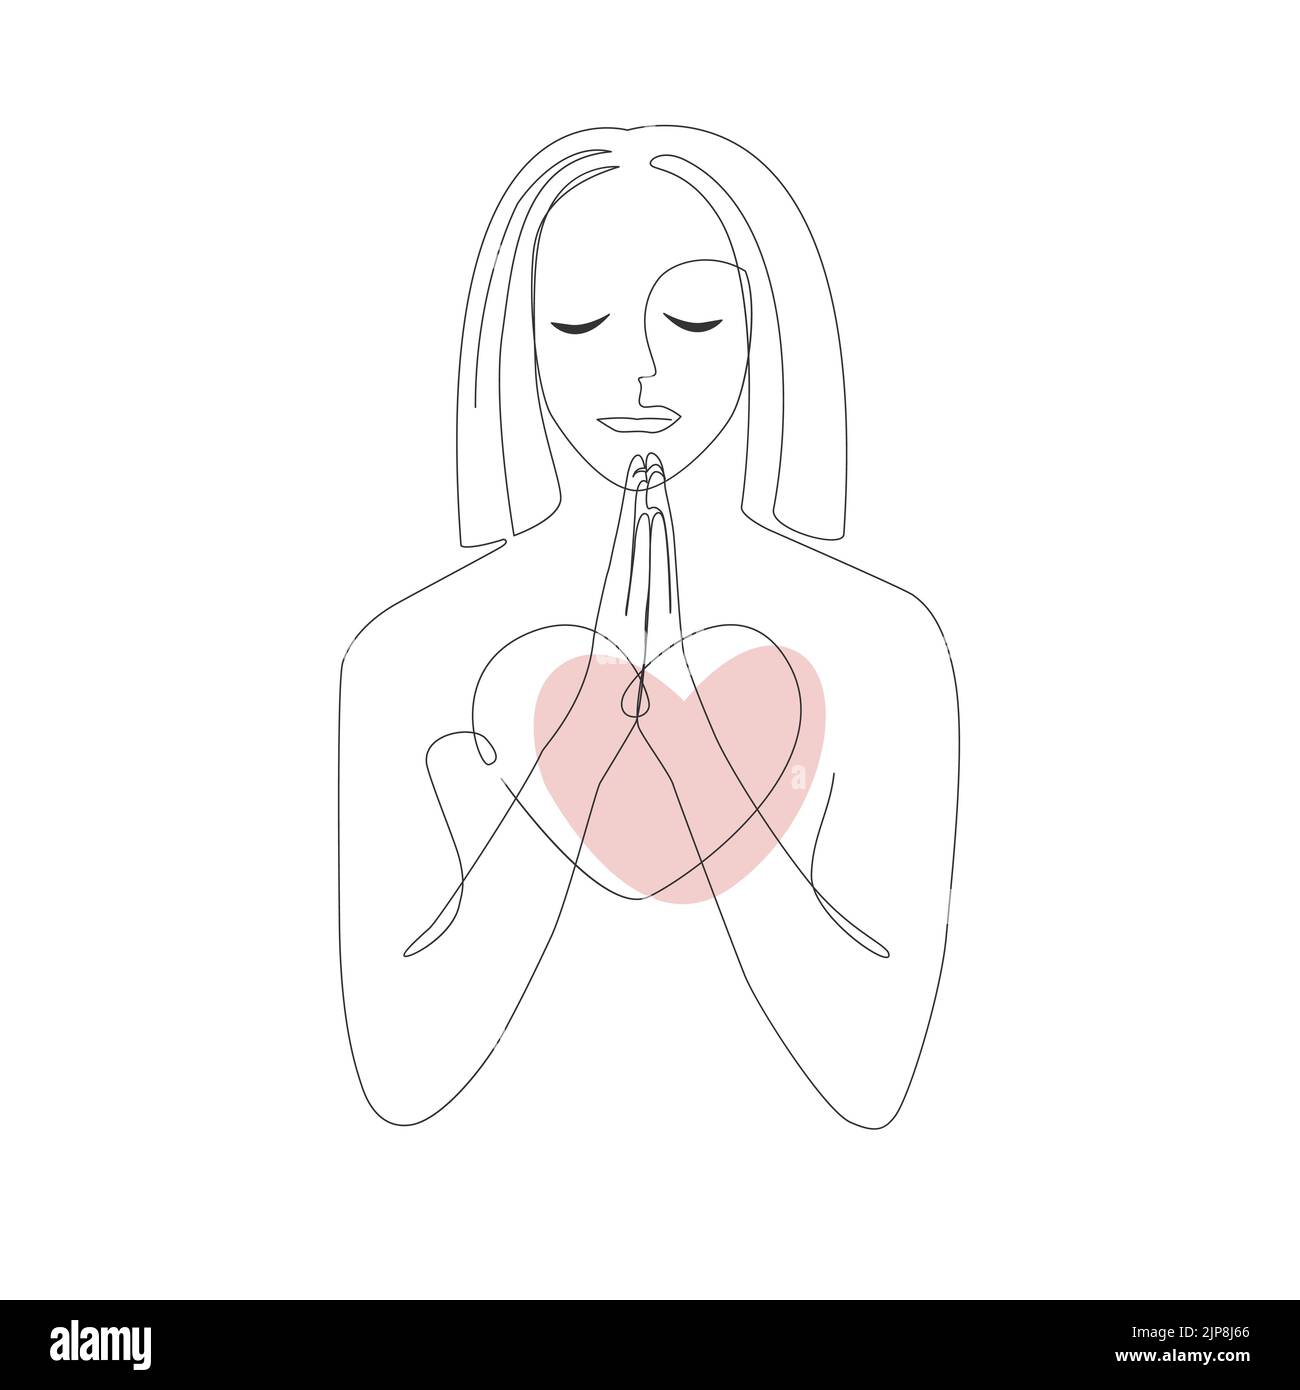 Praiyng donna. Disegno a linea continua della preghiera con cuore spezzato, illustrazione vettoriale. Illustrazione Vettoriale